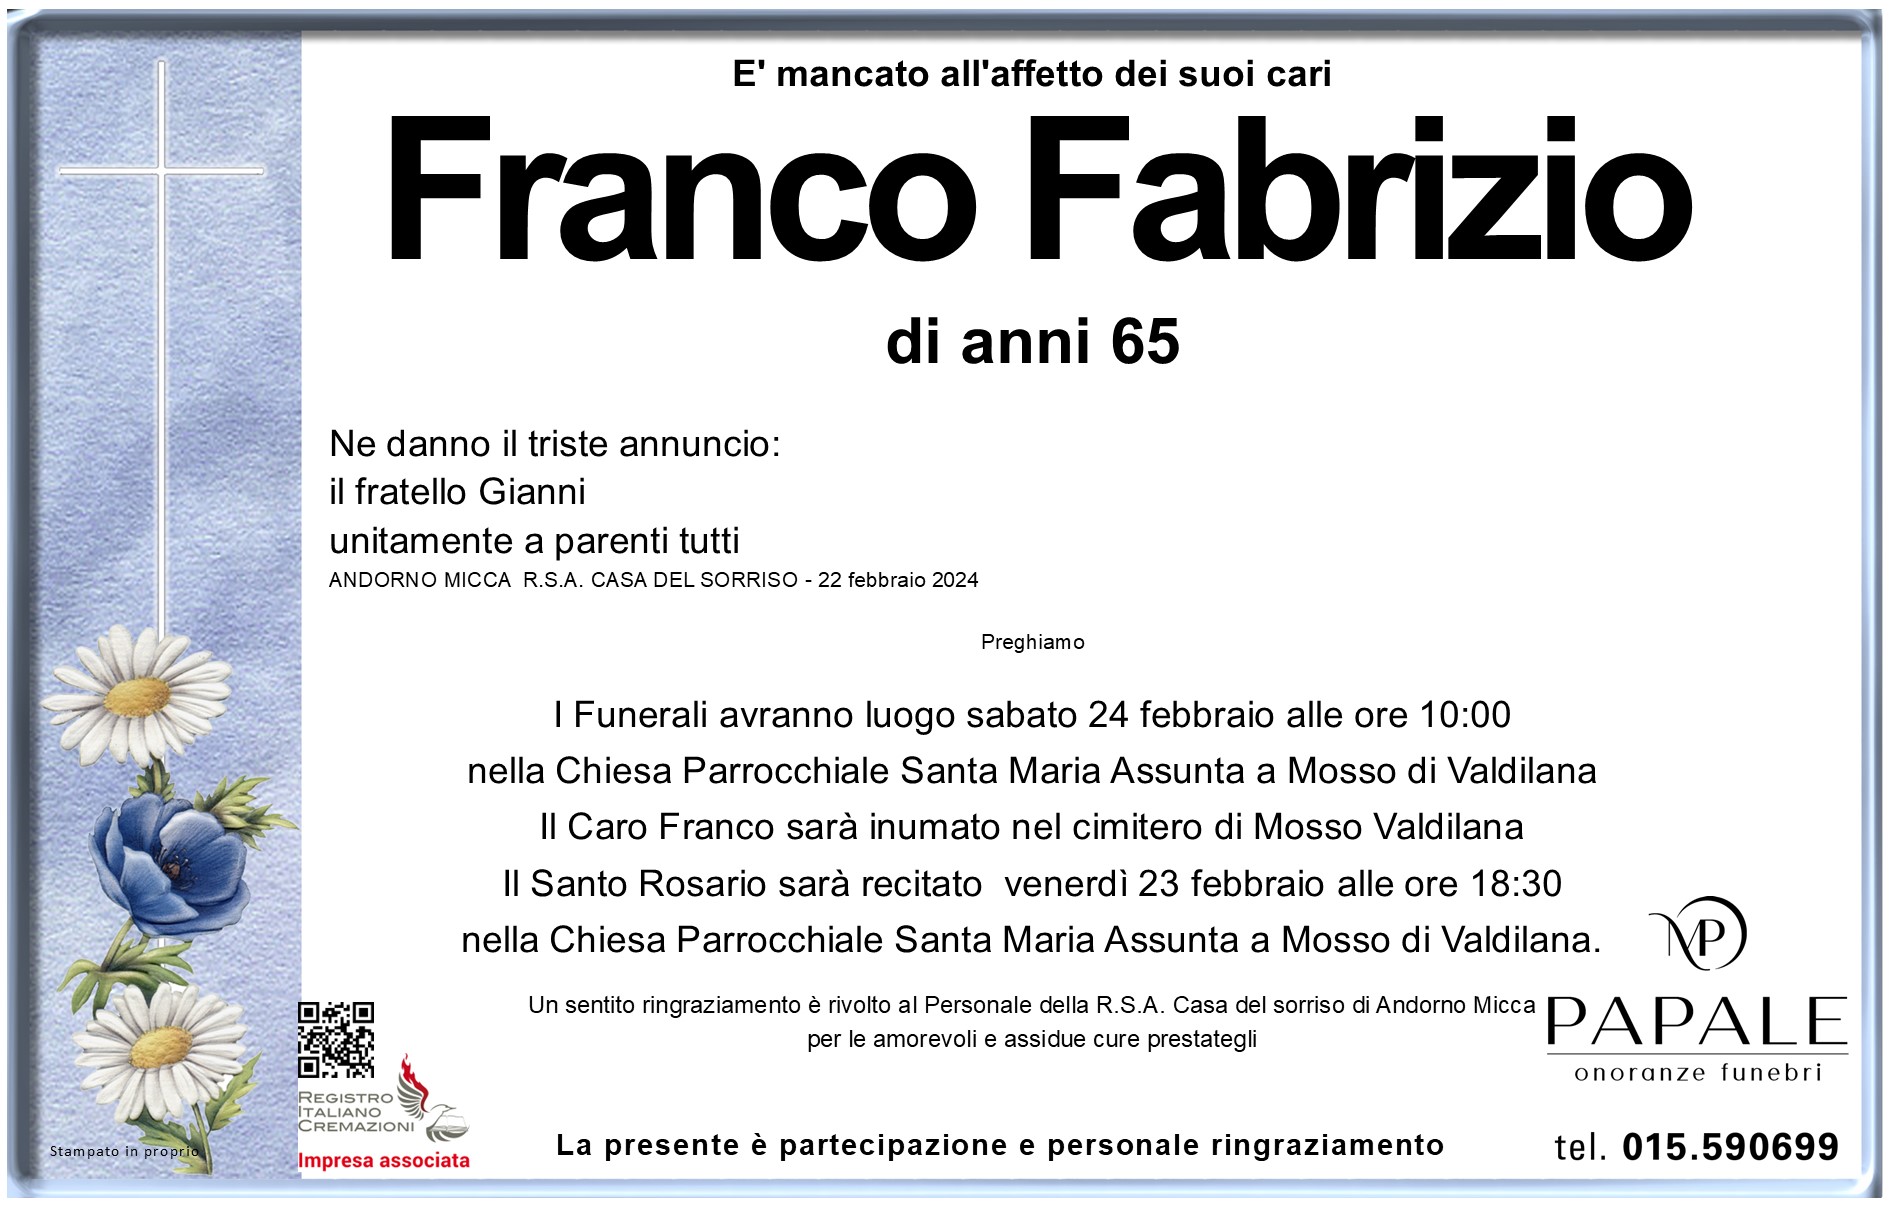 Onoranze Funebri Papale - Necrologi - Necrologio di Franco Fabrizio